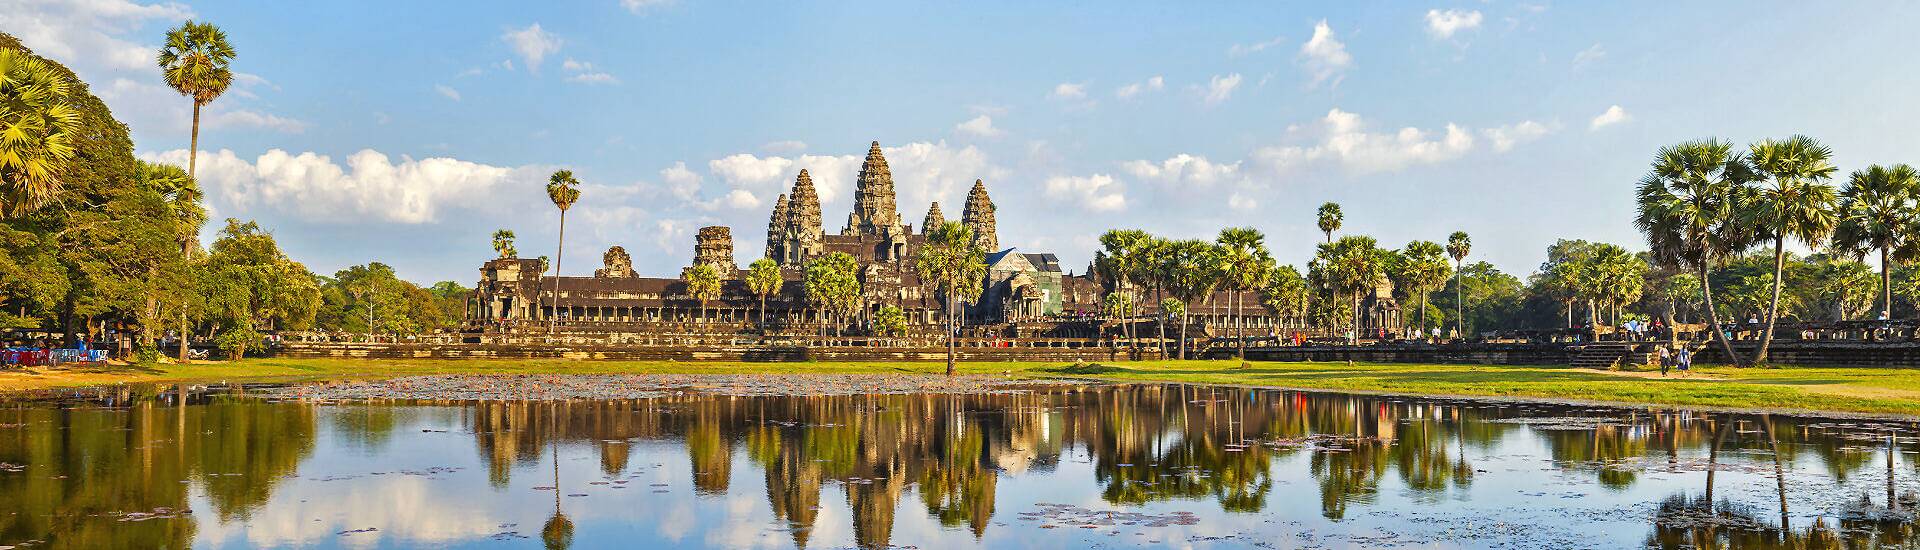 Angkor Wat, die größte Tempelanlage der Welt, in Kambodscha. Beste Reisezeit: Trockenzeit (November bis April)